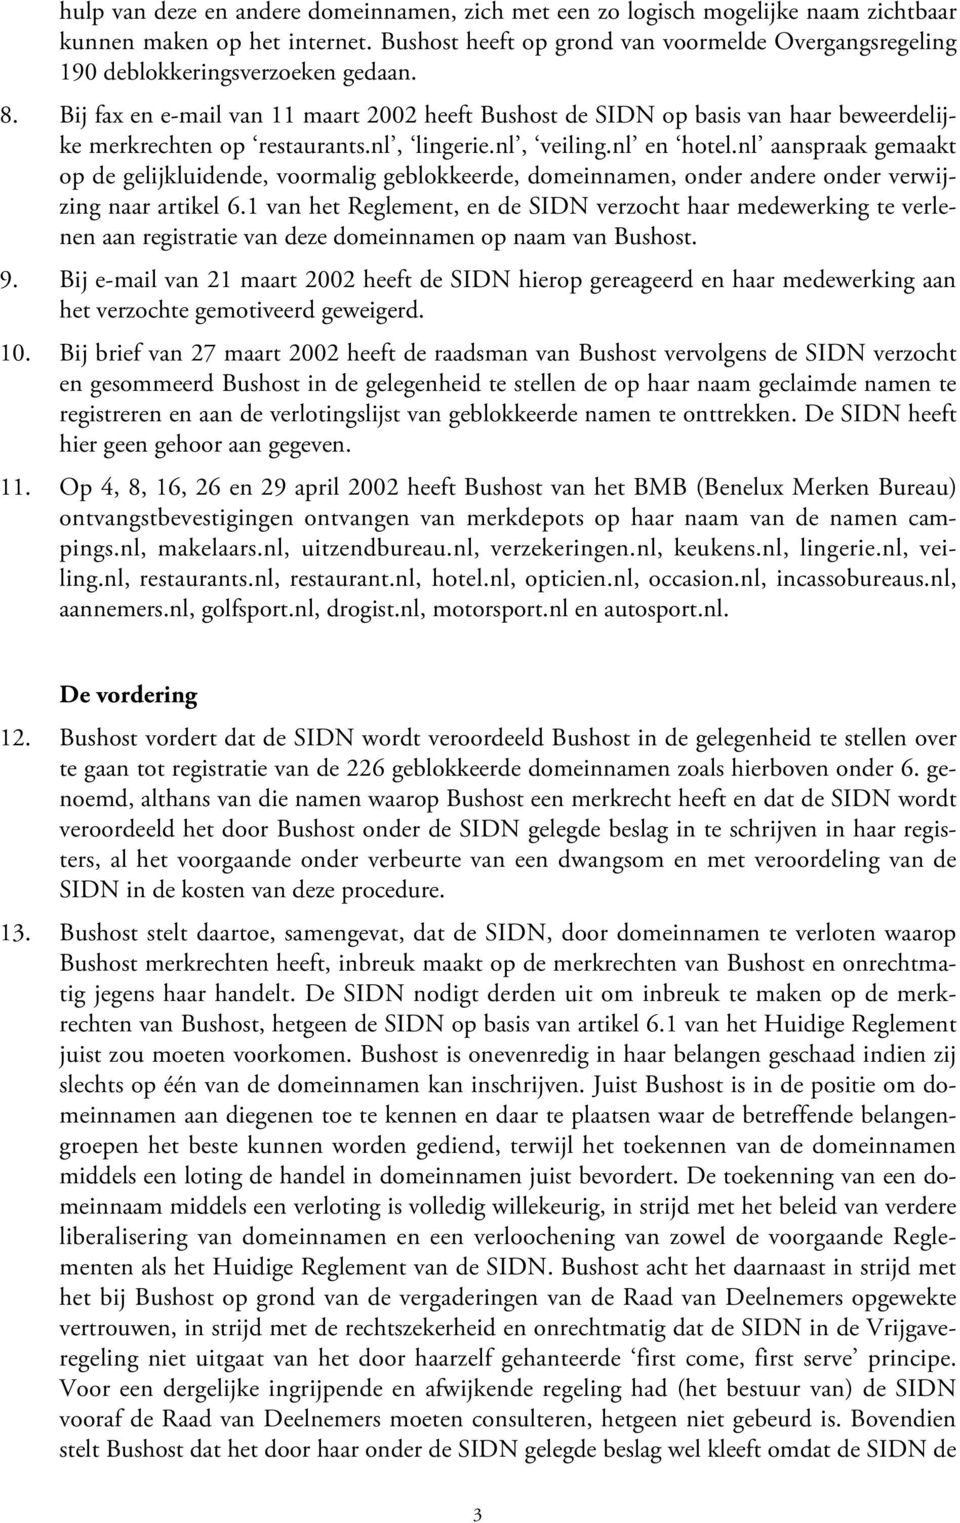 Bij fax en e-mail van 11 maart 2002 heeft Bushost de SIDN op basis van haar beweerdelijke merkrechten op restaurants.nl, lingerie.nl, veiling.nl en hotel.